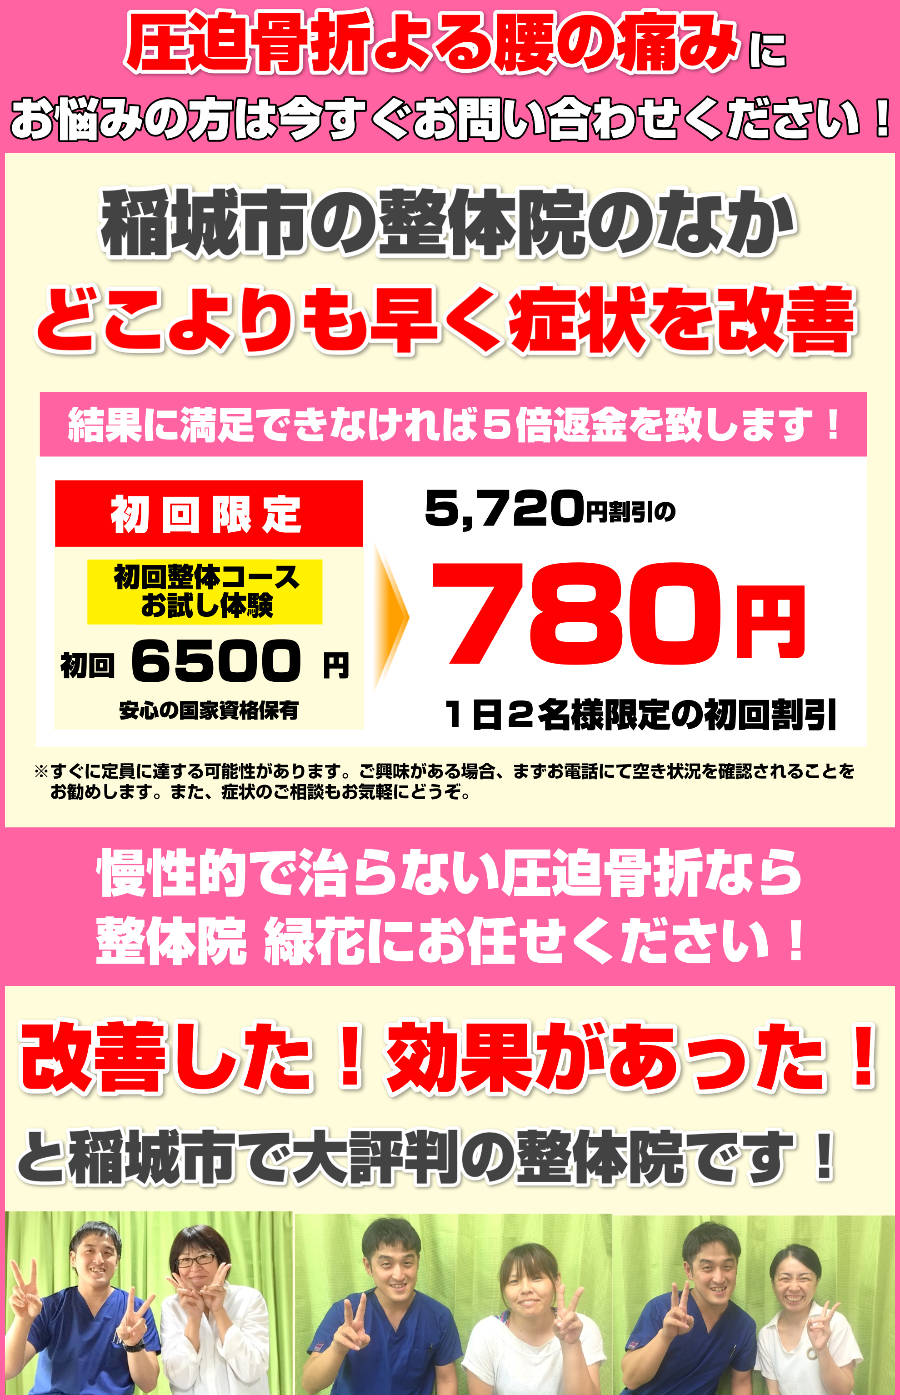 inagishi-seitai-s50000000s